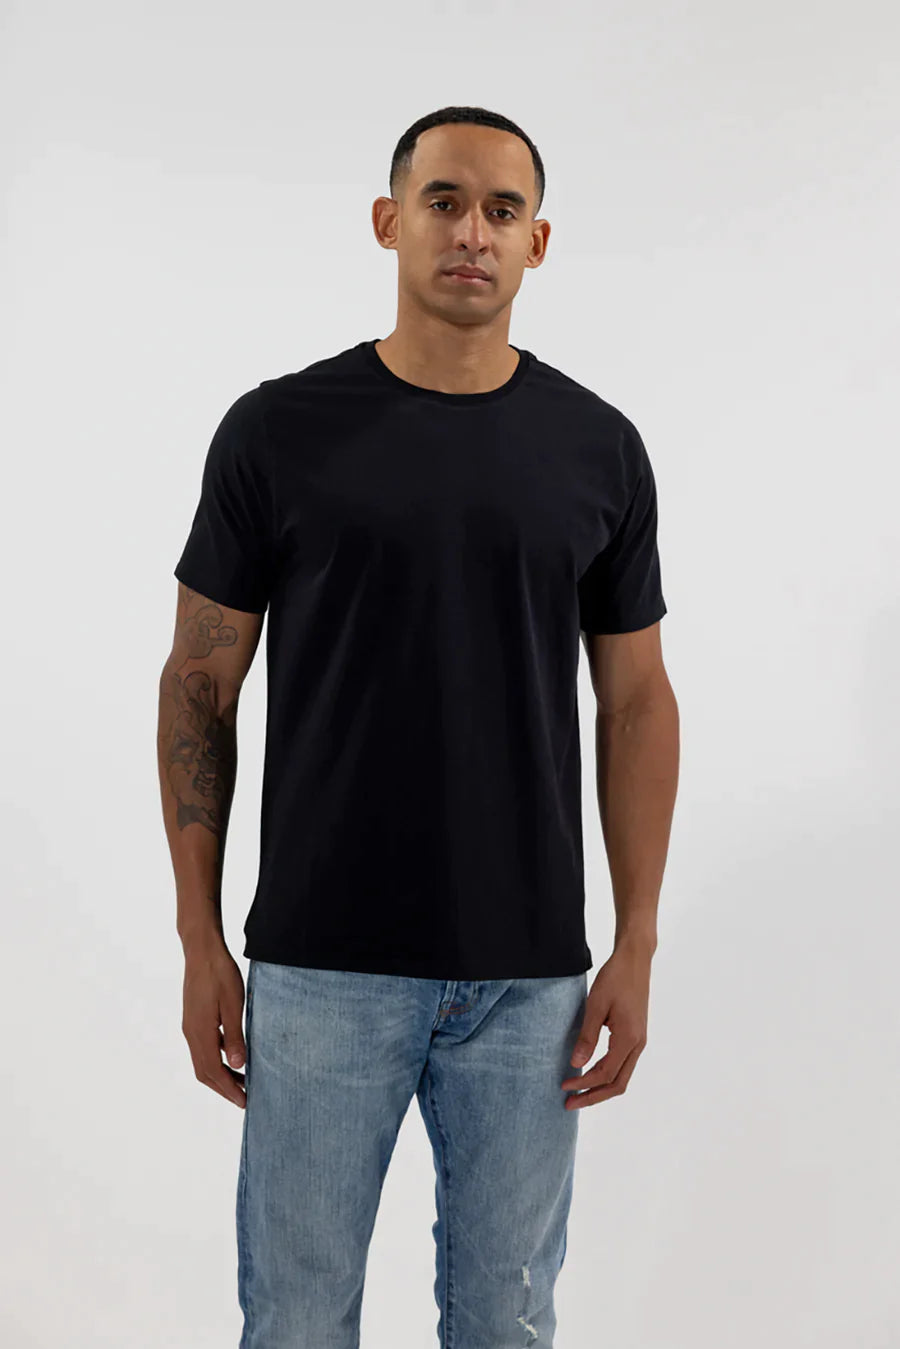 Easy Mondays Crew Neck Cotton T-Shirt-Men's T-Shirts-Black-S-Yaletown-Vancouver-Surrey-Canada